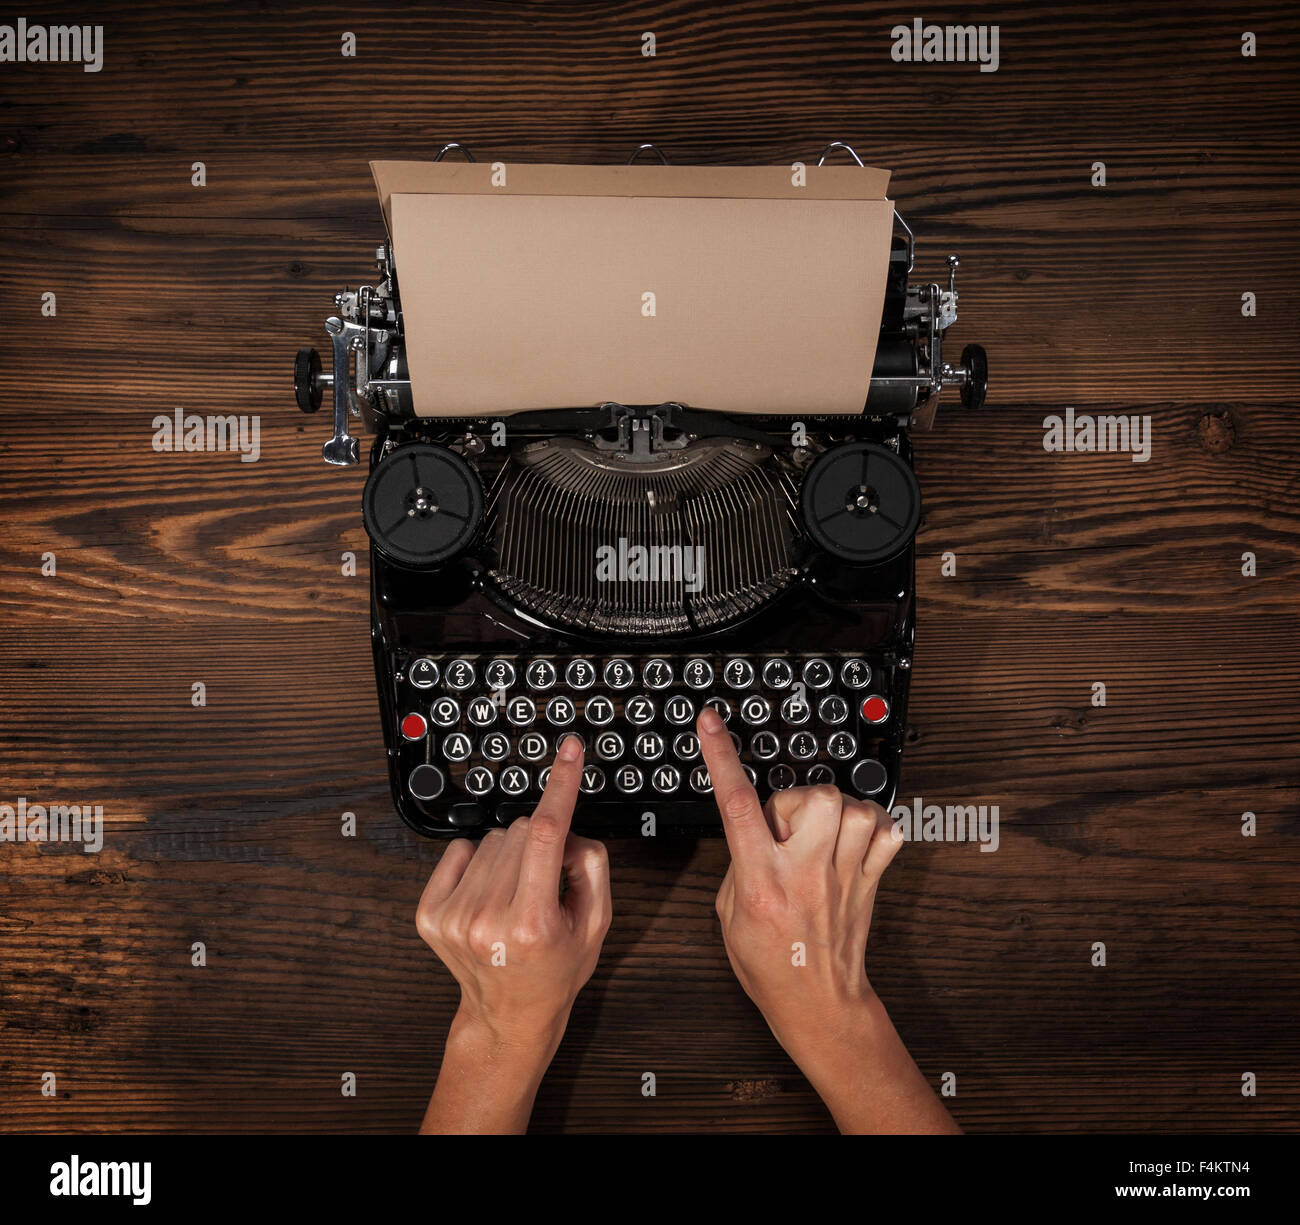 People sur une vieille machine à écrire Banque D'Images